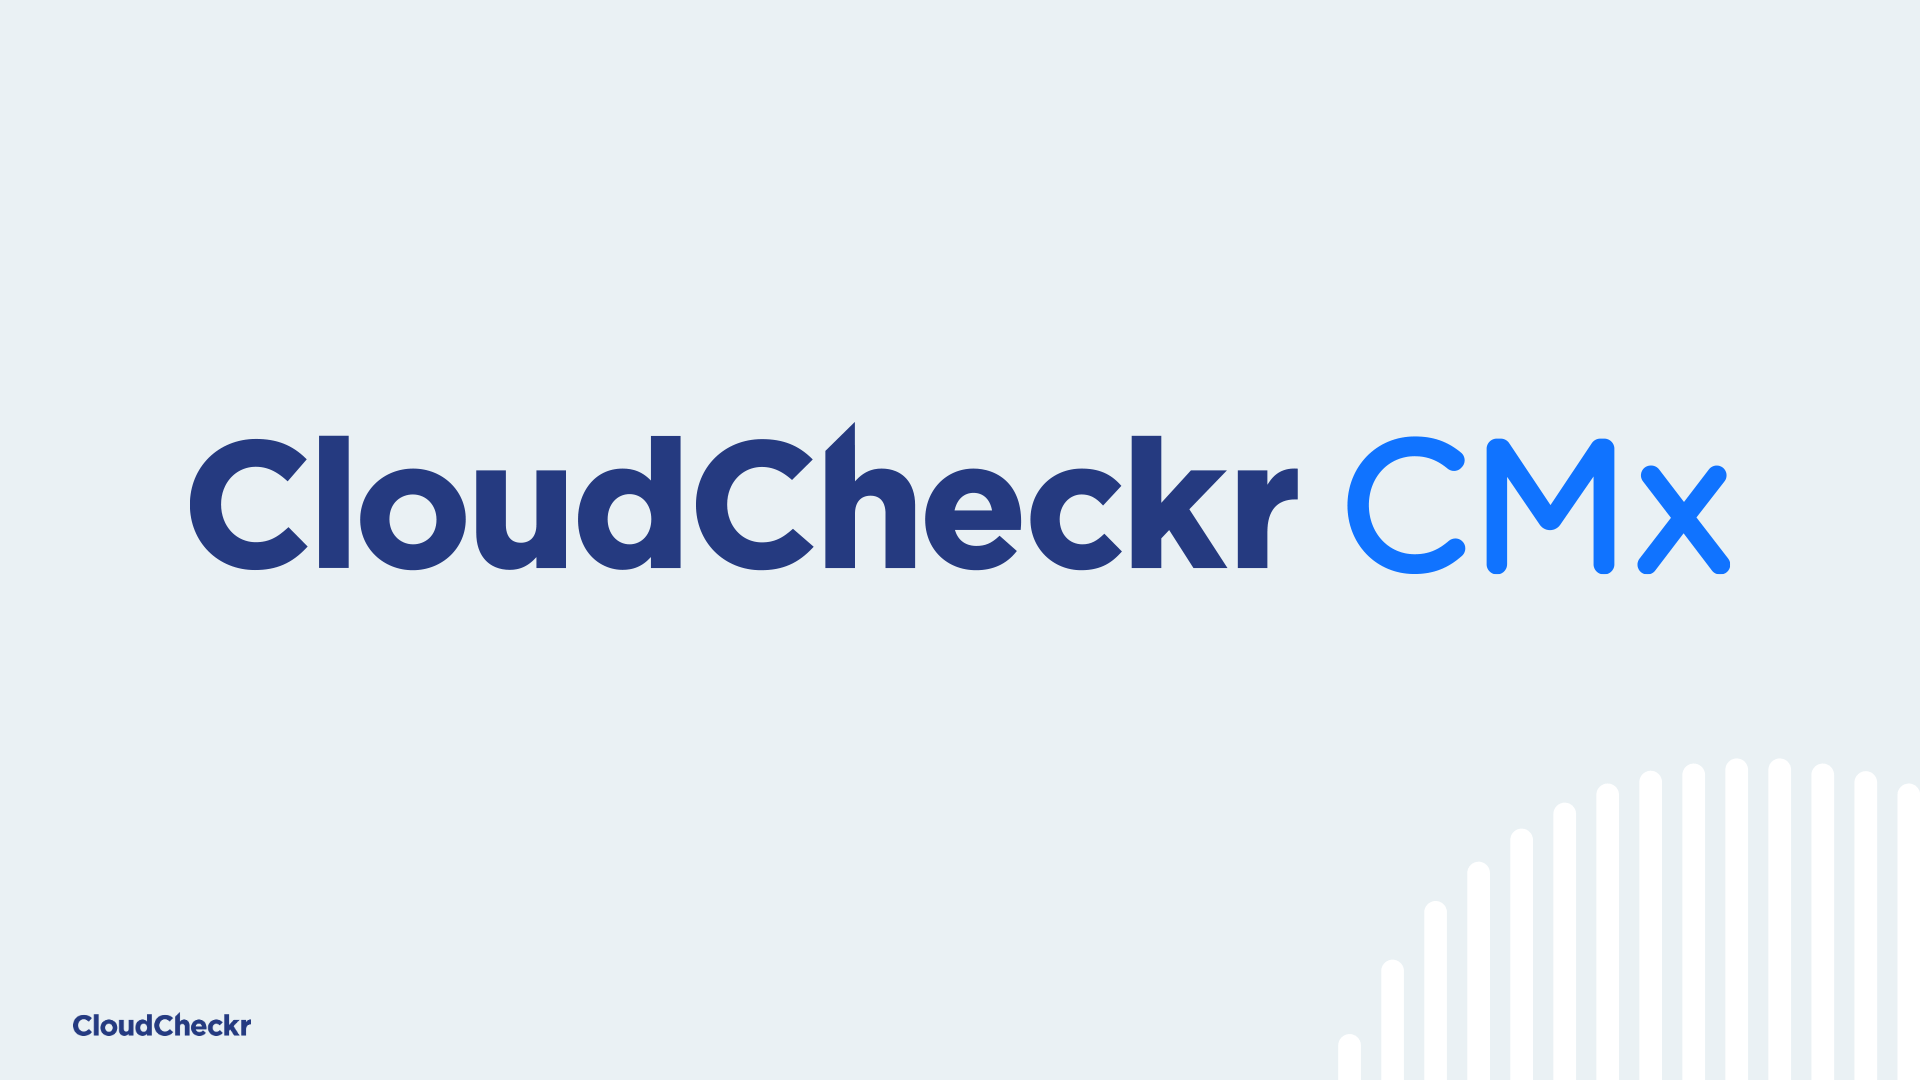 CloudCheckr CMx